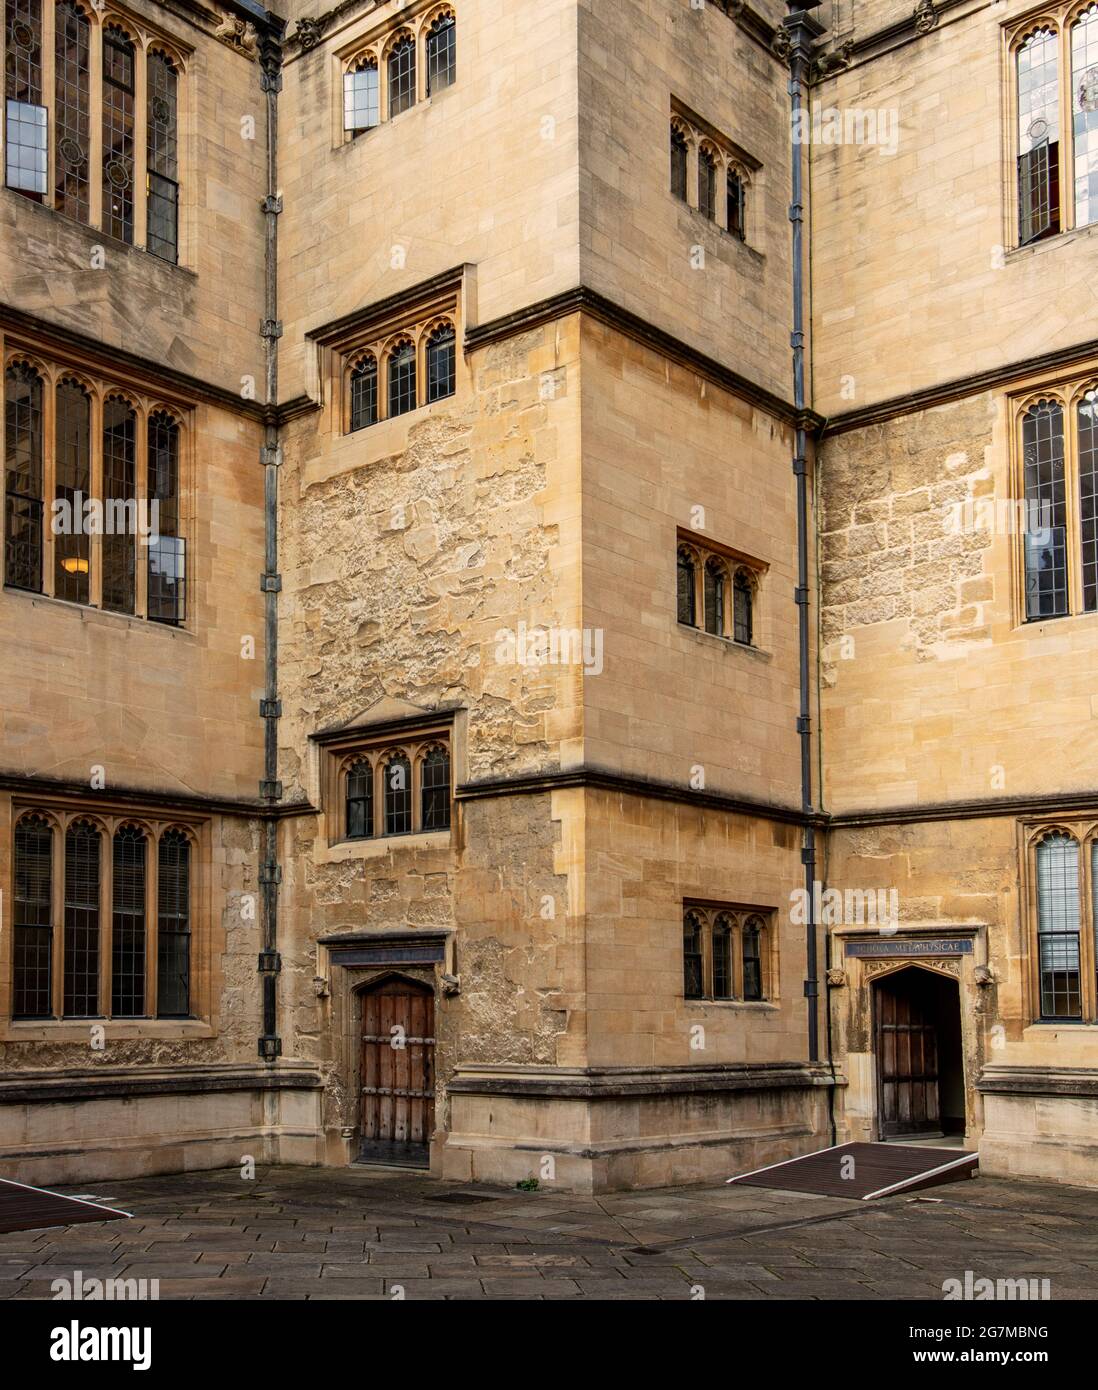 Le quadrilatère Old Schools de la Bodleian Library, la bibliothèque principale de l'Université d'Oxford, construit en 1613-1624 Banque D'Images